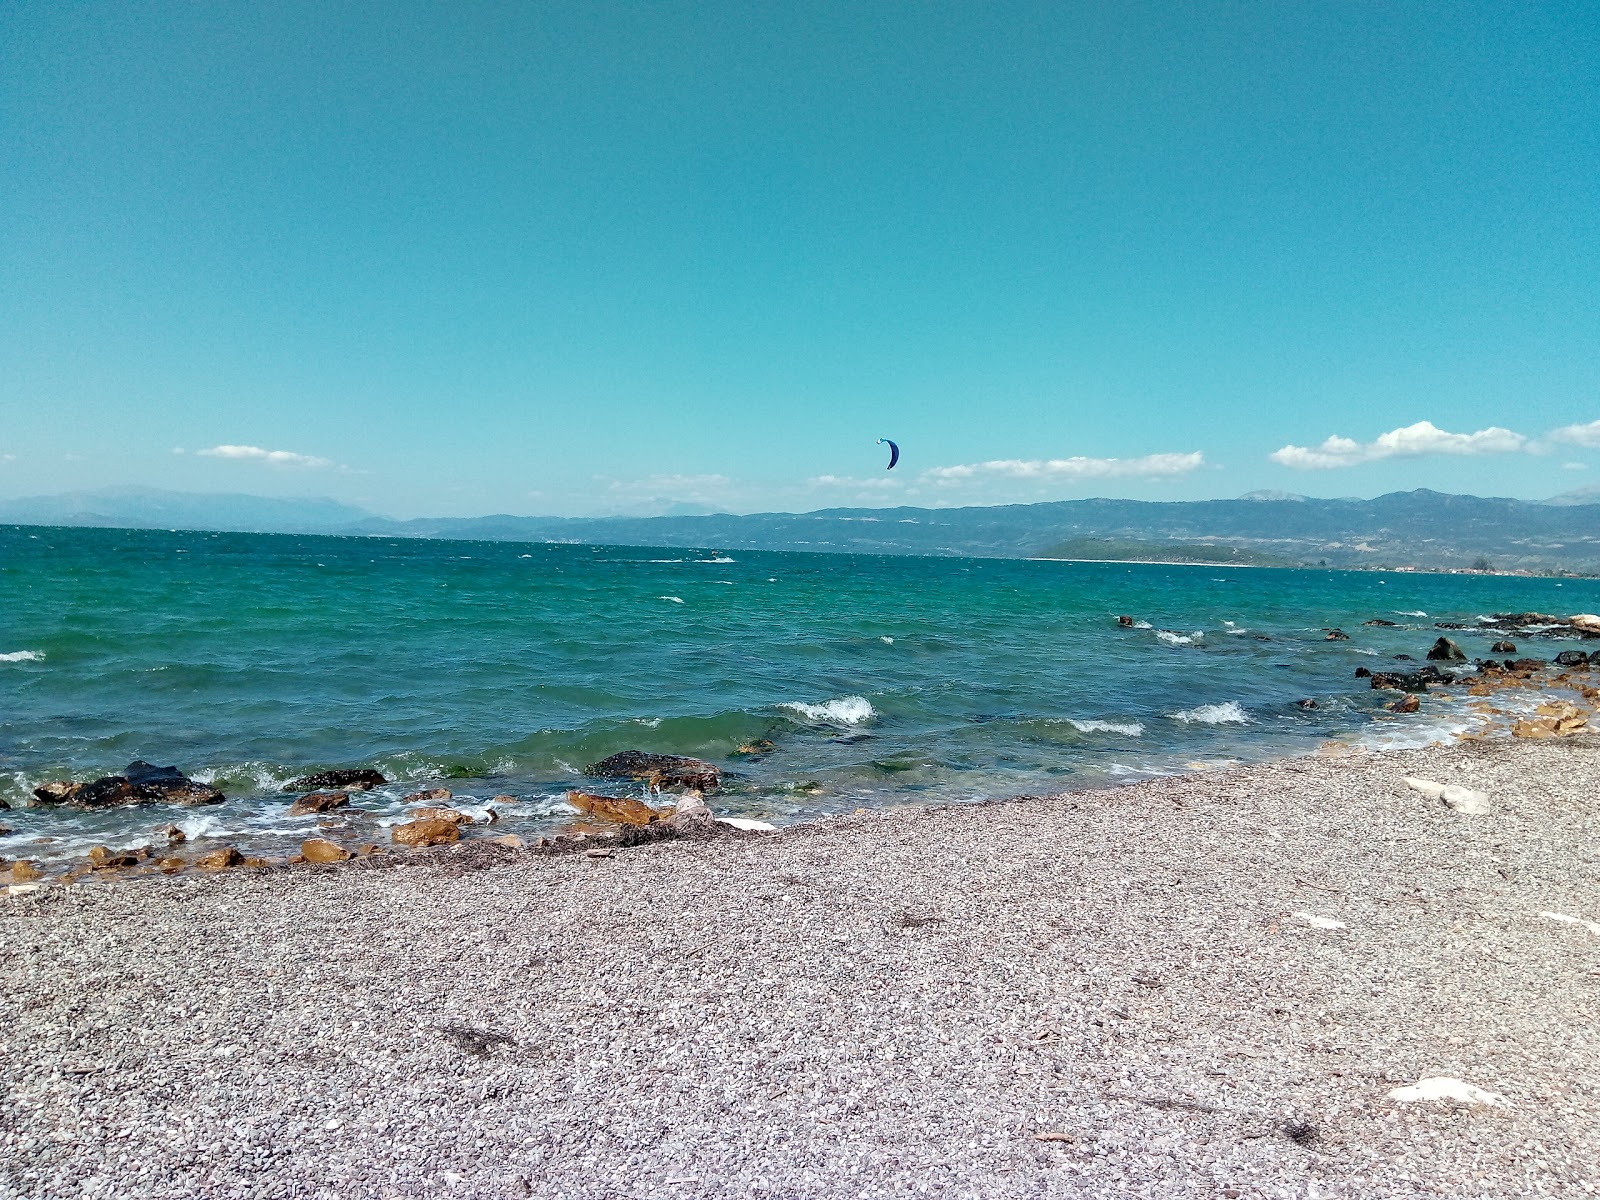 Zdjęcie Katergaki beach z poziomem czystości głoska bezdźwięczna